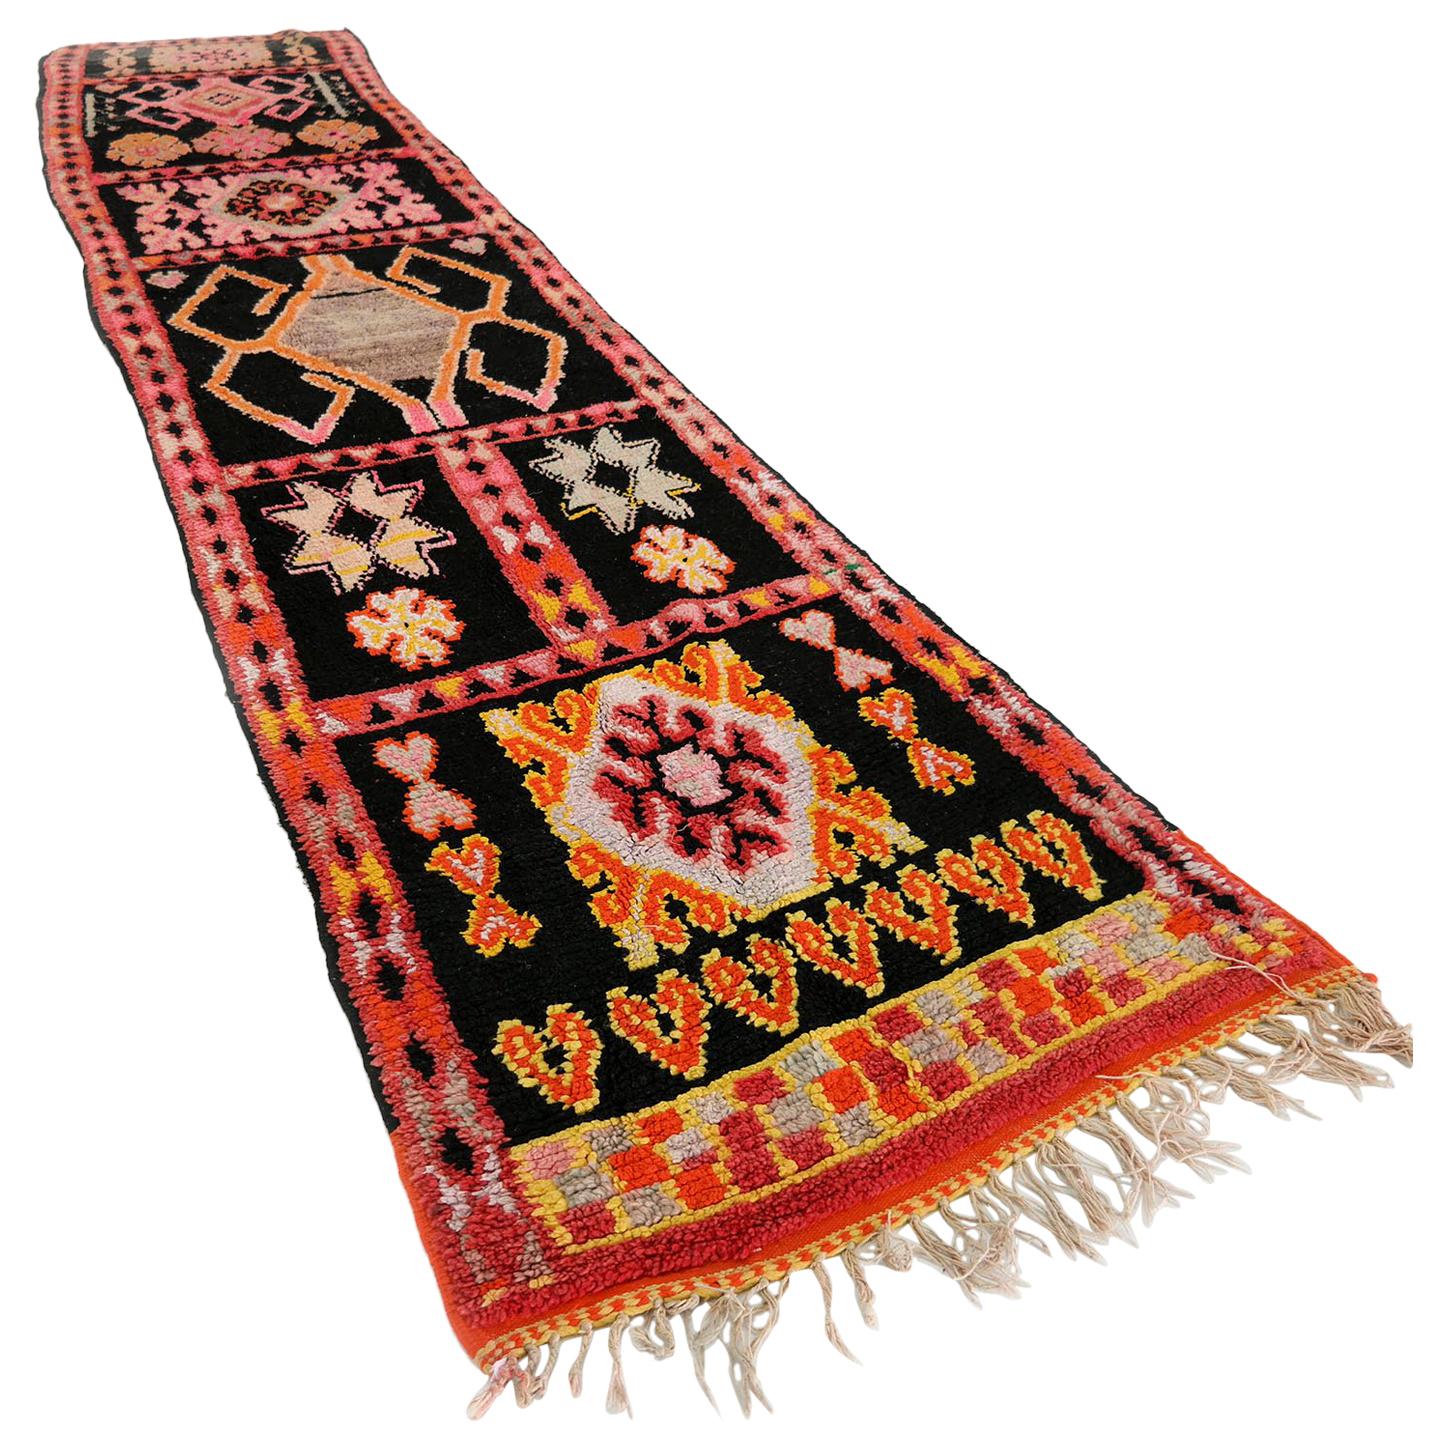 Moroccan Runner Rug, Carpet Runner, Very Long Vintage Runner Rug